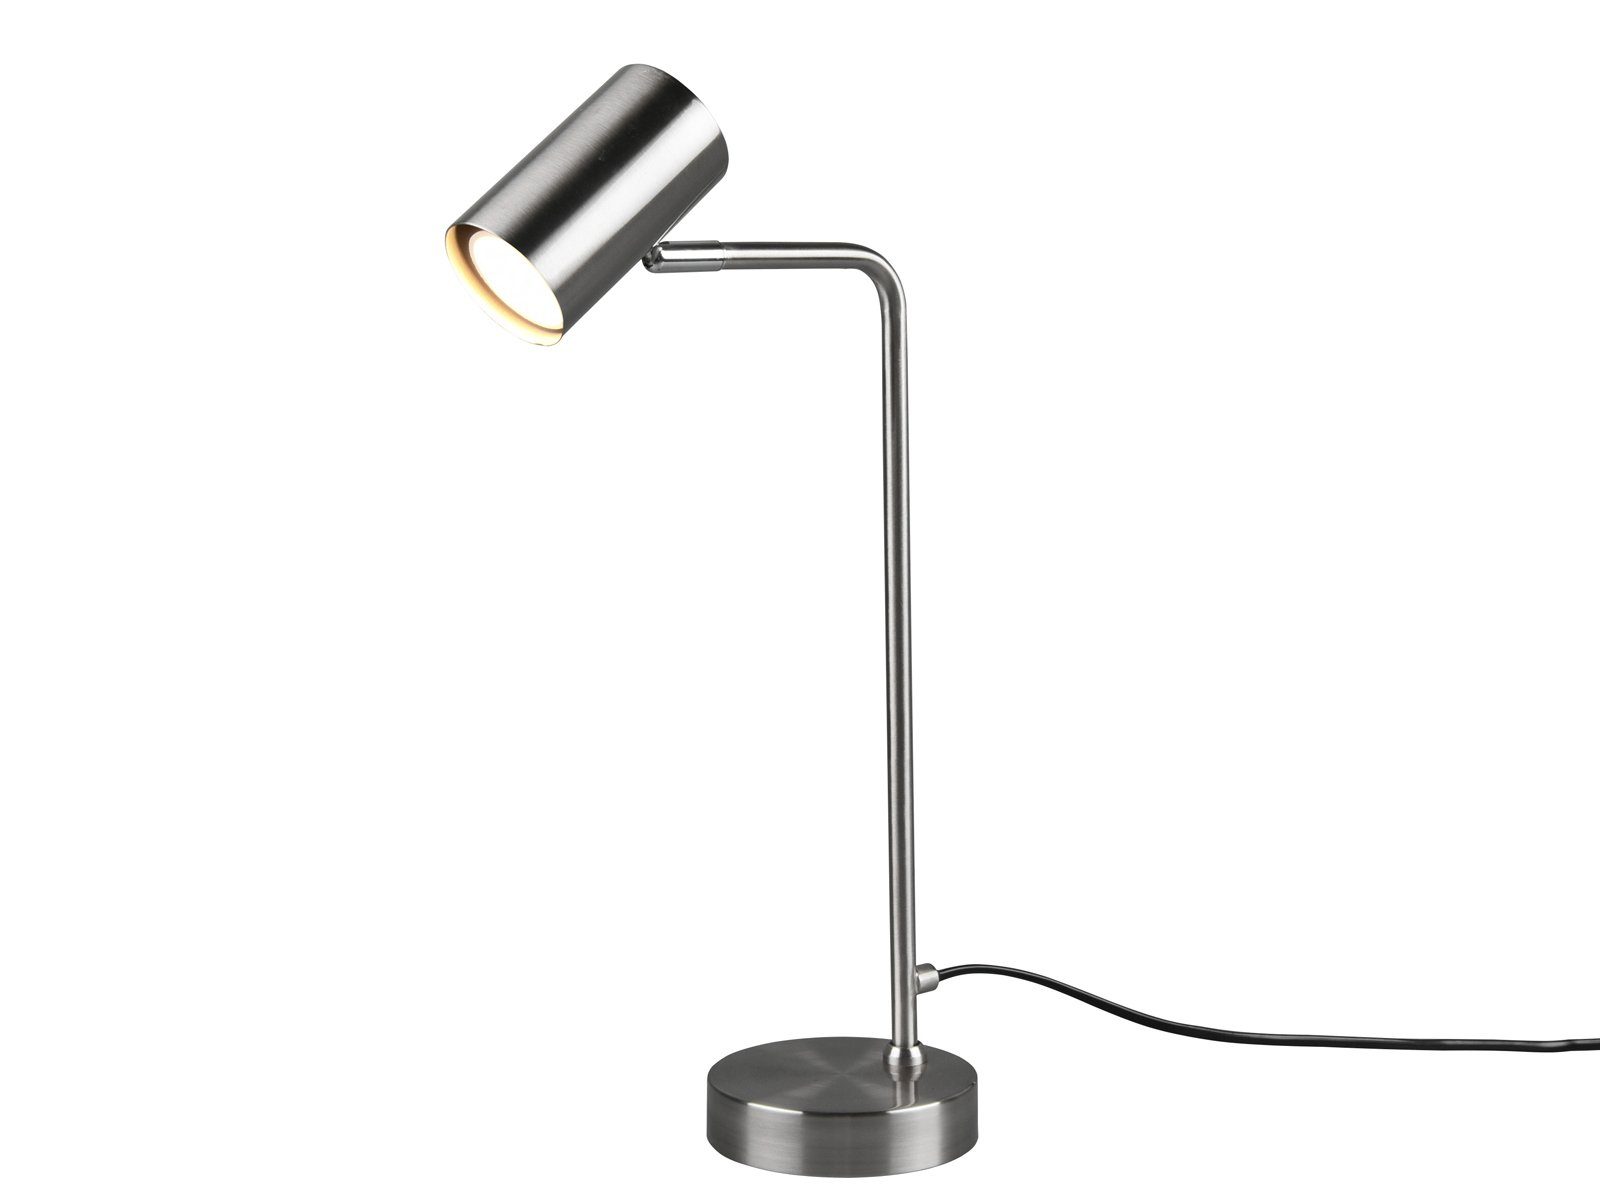 Silber Groß-e 45cm Höhe Dimmfunktion, schwenkbar, Silber meineWunschleuchte wechselbar, LED Lampenschirm matt Warmweiß, Arbeitsplatzleuchte Schreibtischlampe, LED